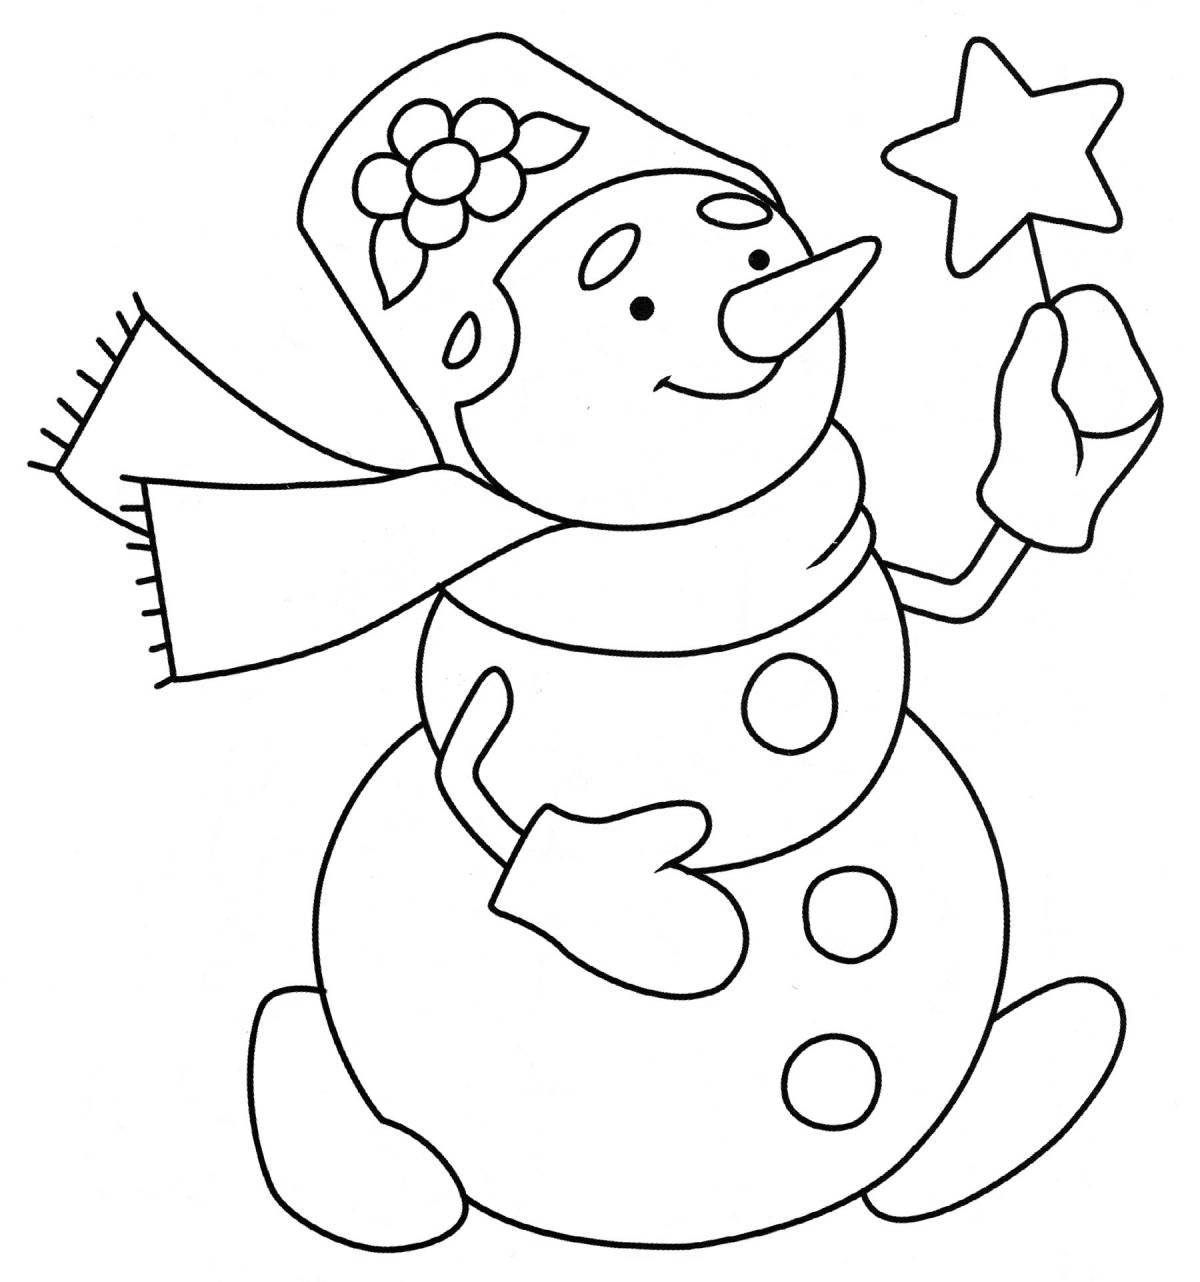 Adorable snowmen coloring book